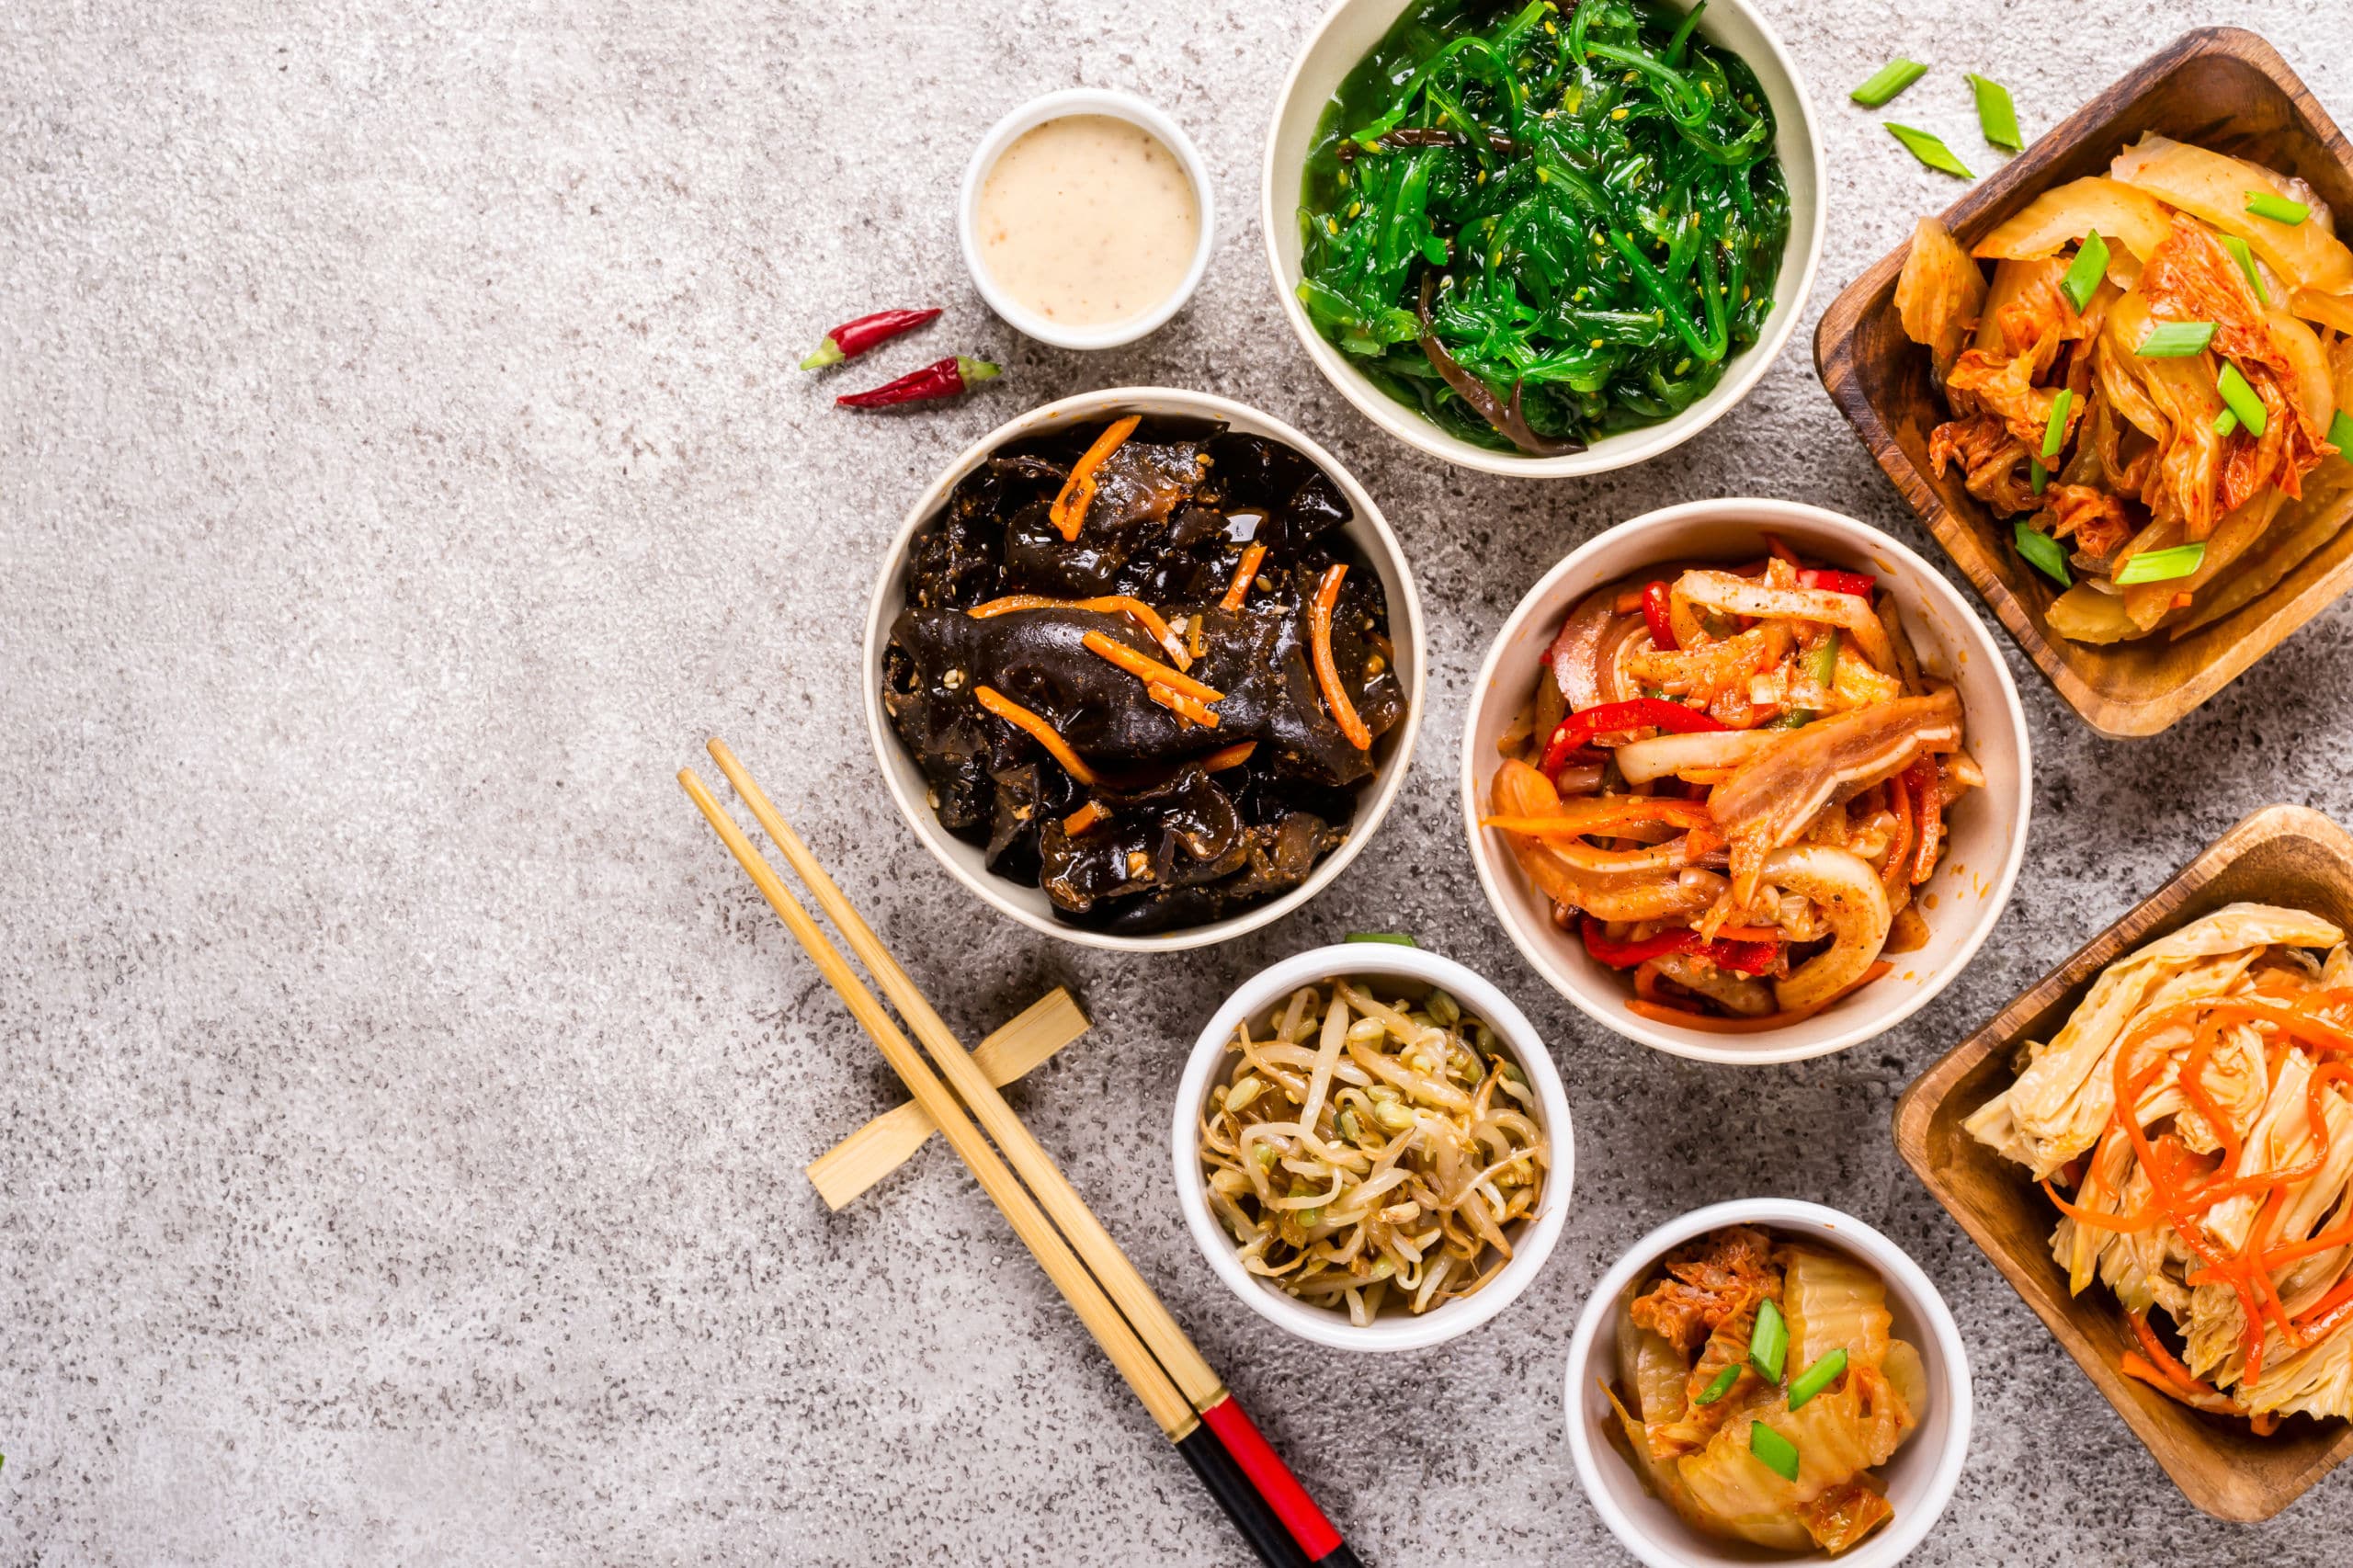 Comida coreana: vocabulario y platos típicos - MosaLingua